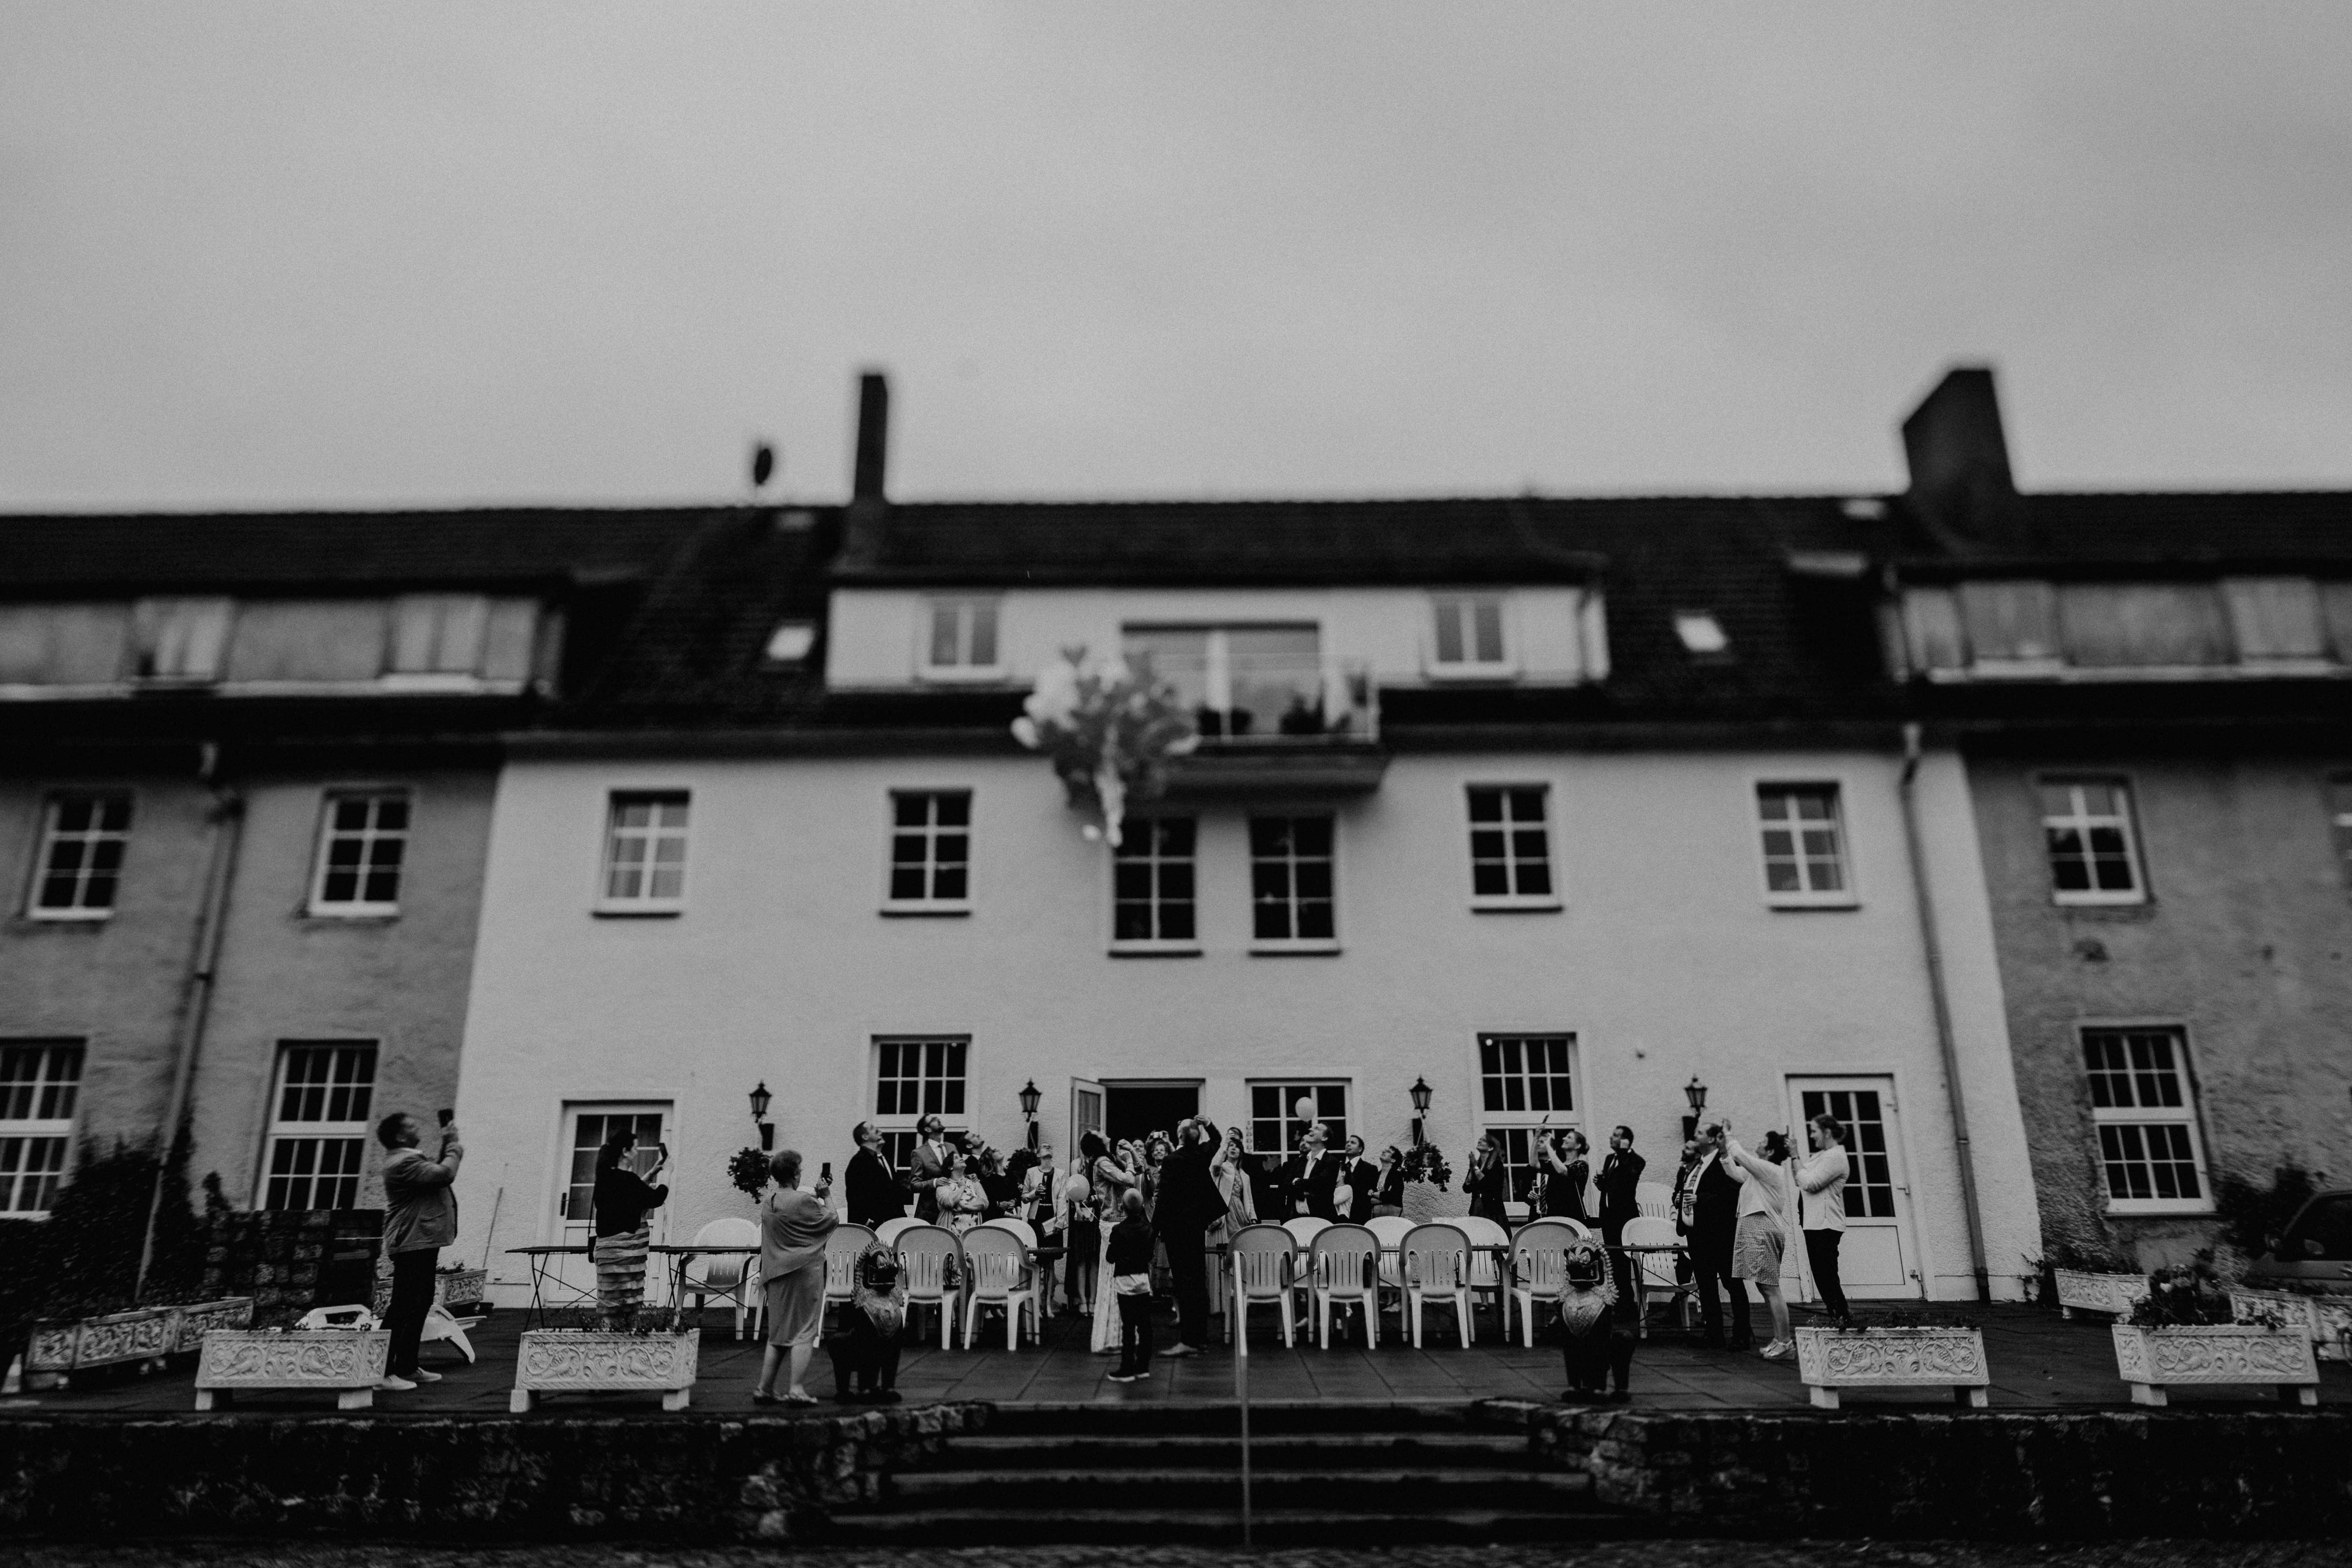 Hochzeitsfoto, aufgenommen von Tom und Lia Fotografie, Hochzeitsfotografen aus Rostock und Mecklenburg-Vorpommern.